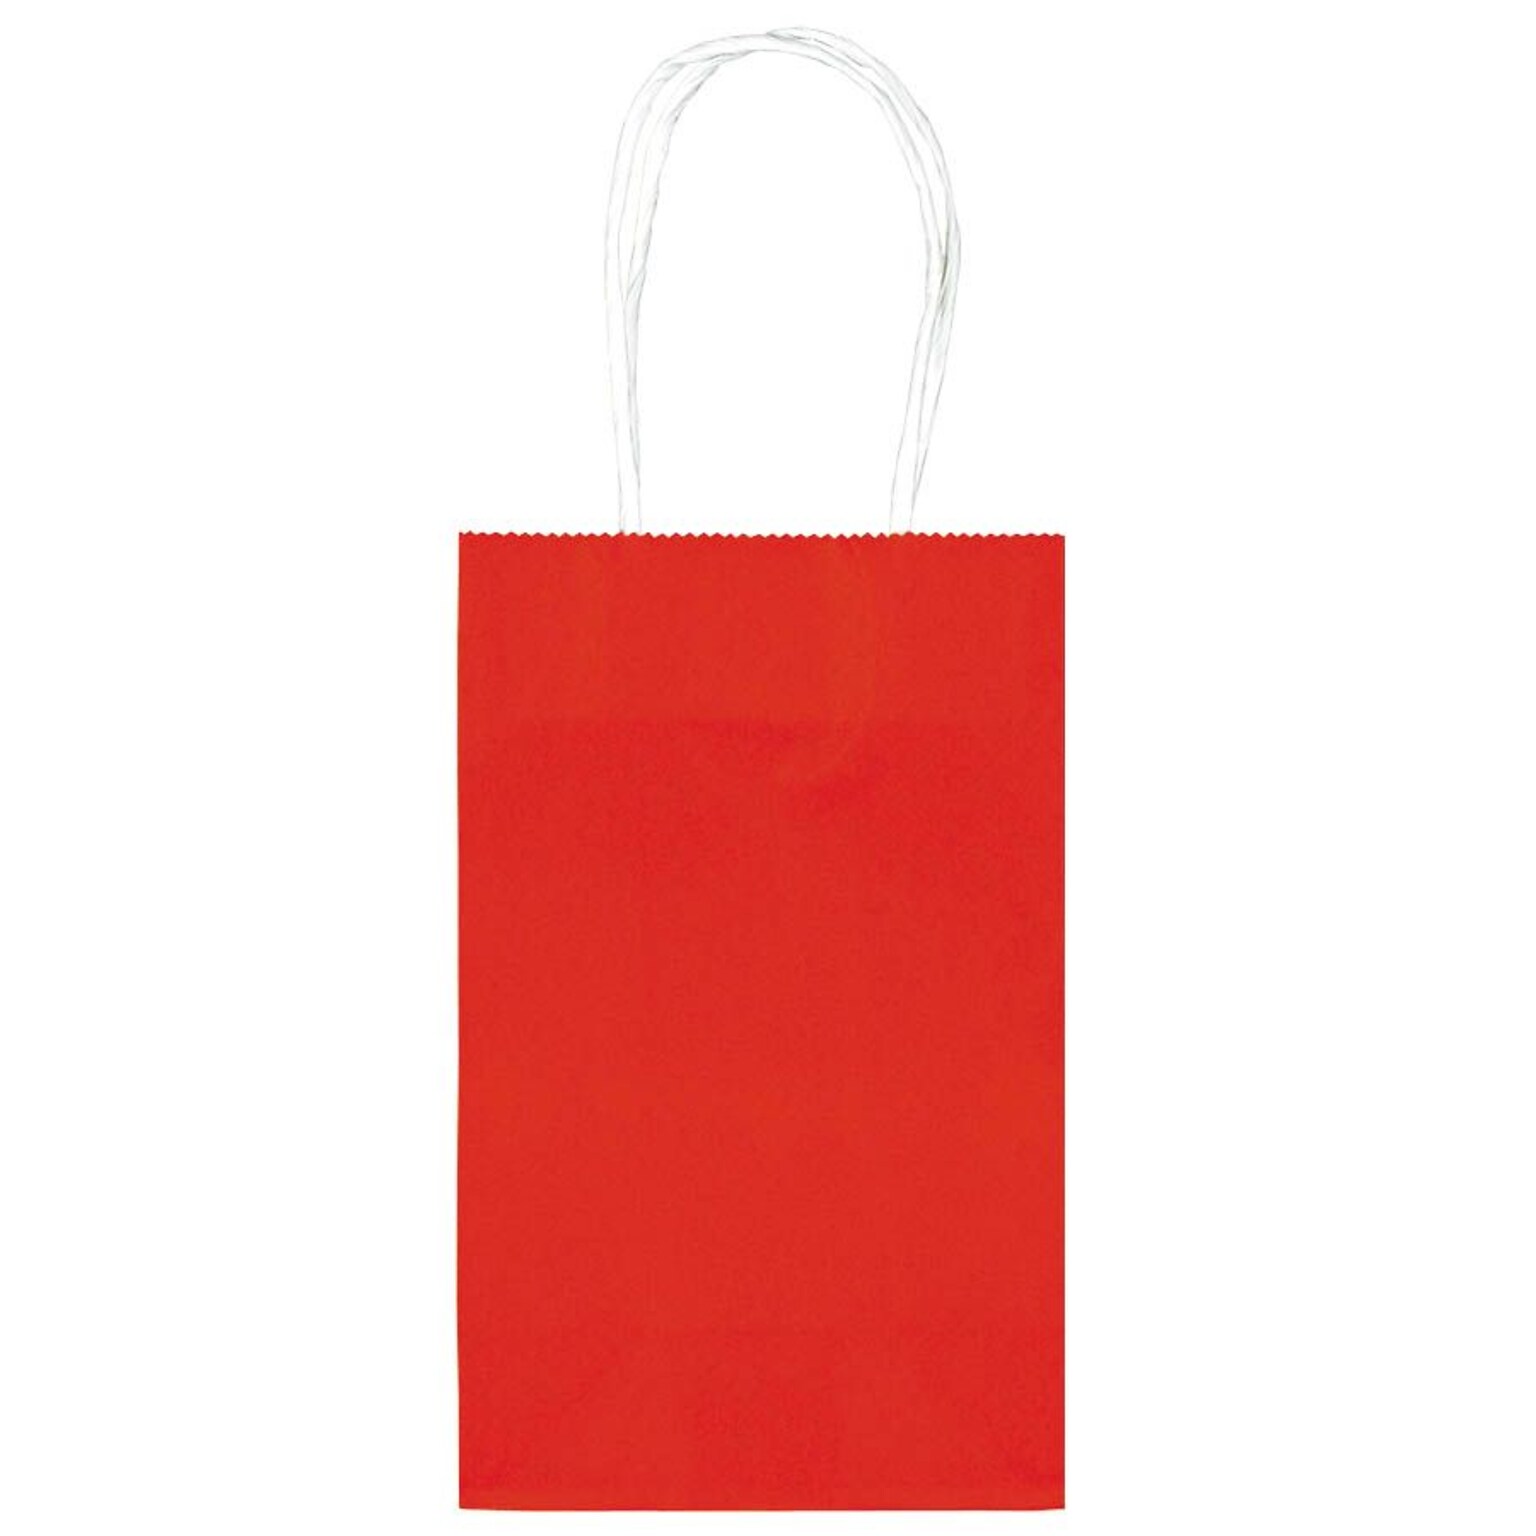 Amscan Kraft Paper Bag, 8.25 x 5.25, Red, 4/Pack, 10 Bags/Pack (162500.07)